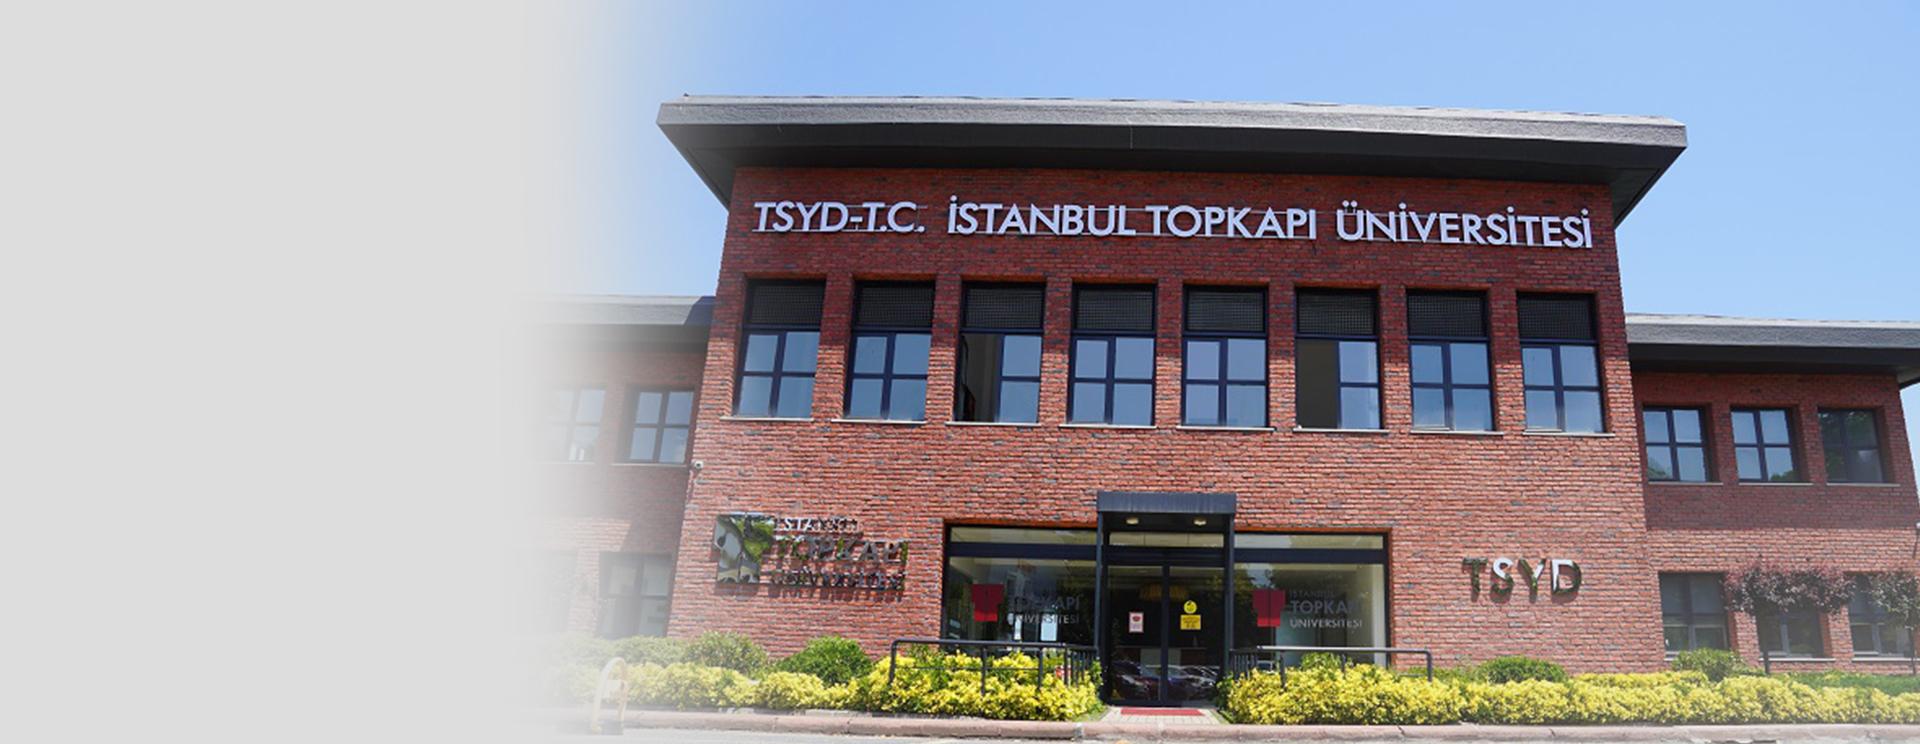 جامعة إسطنبول توب كابي